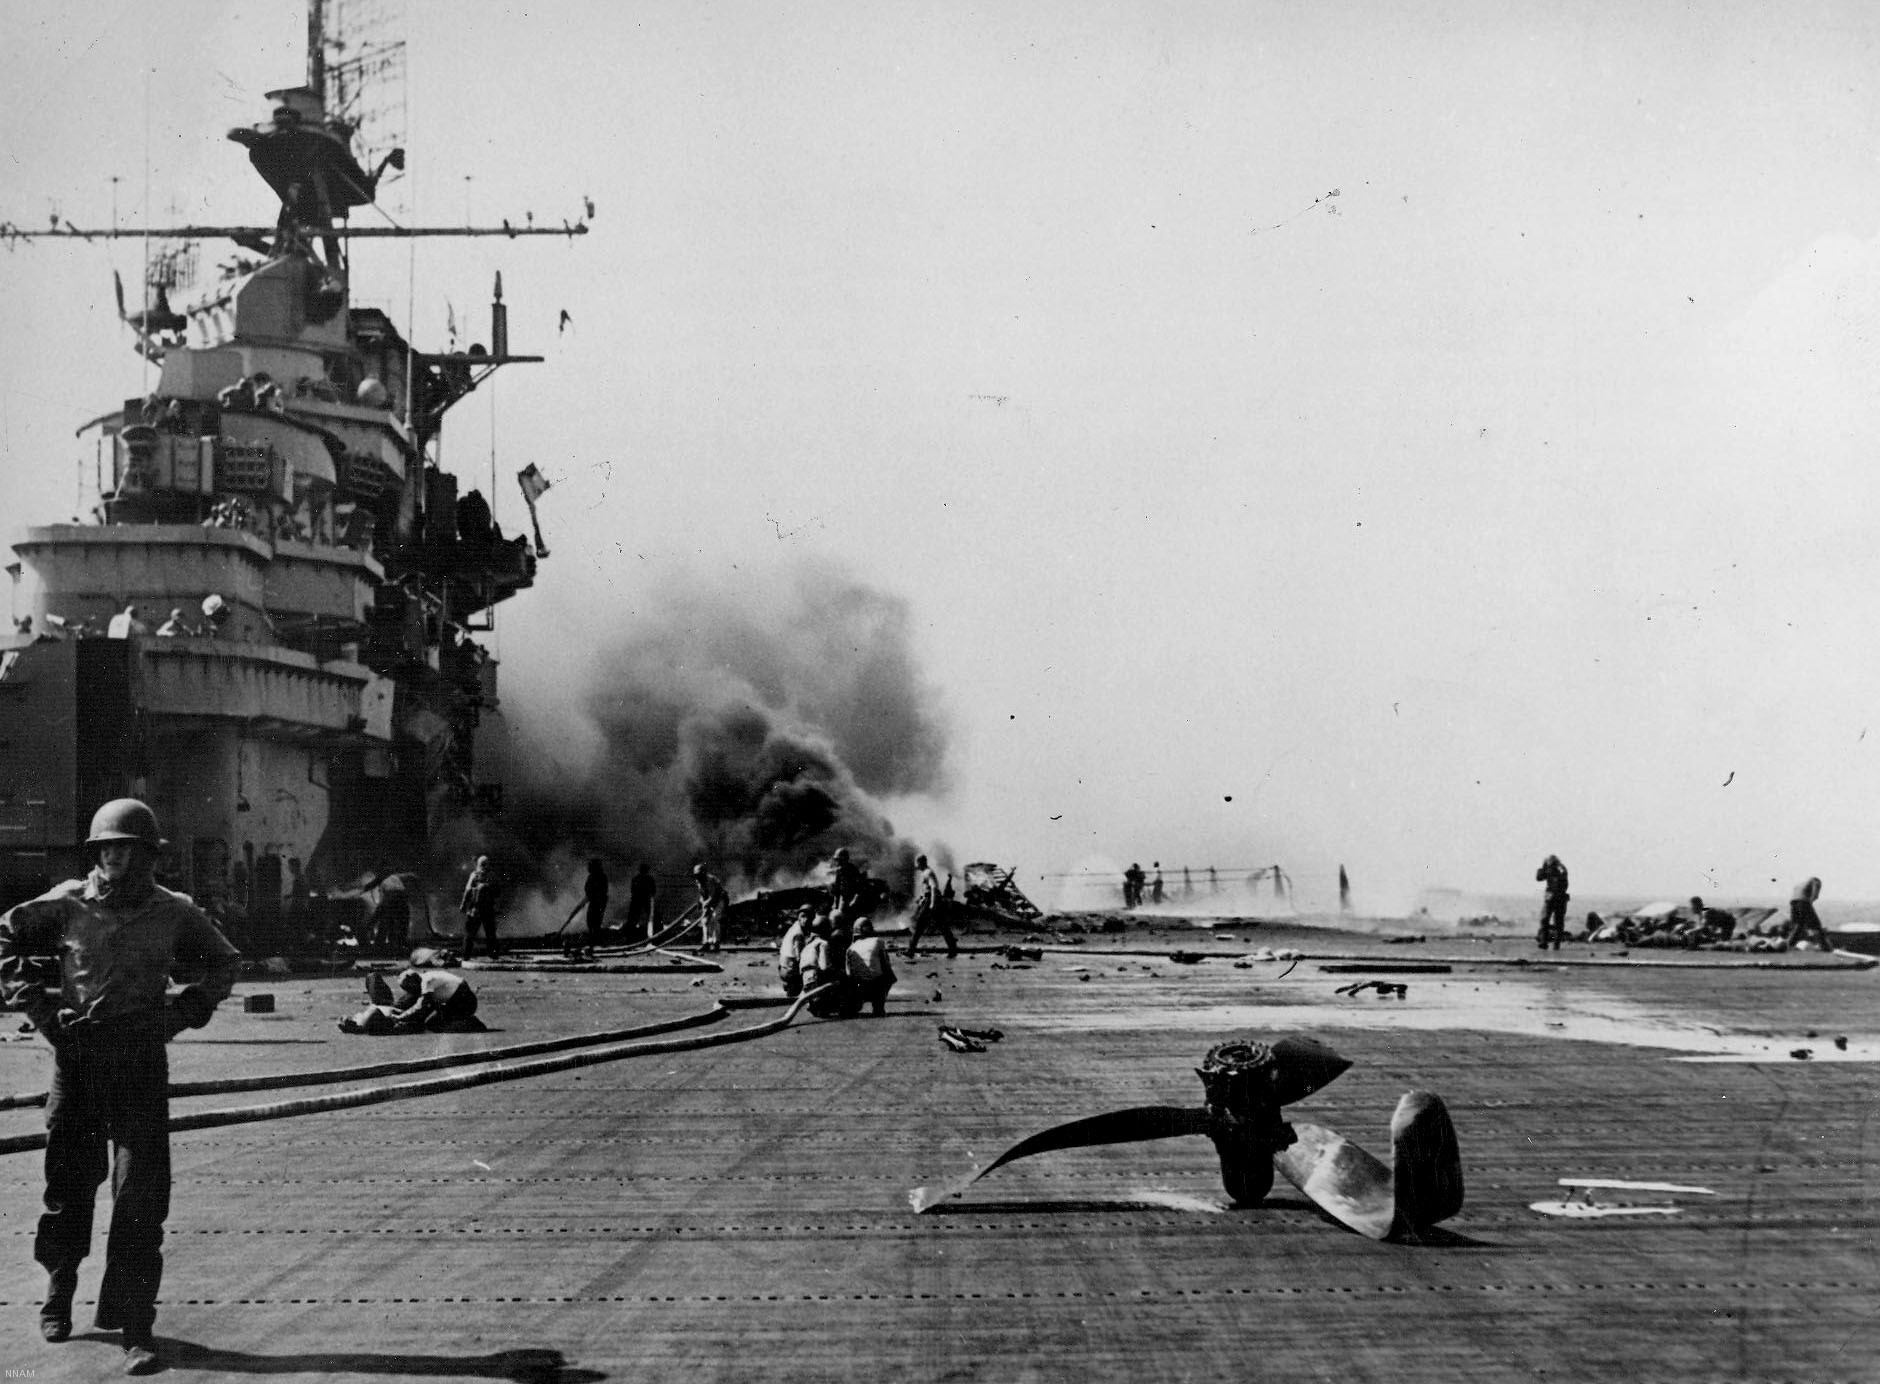 cva-19 uss hancock cv essex class aircraft carrier 55 flight deck explosion fire